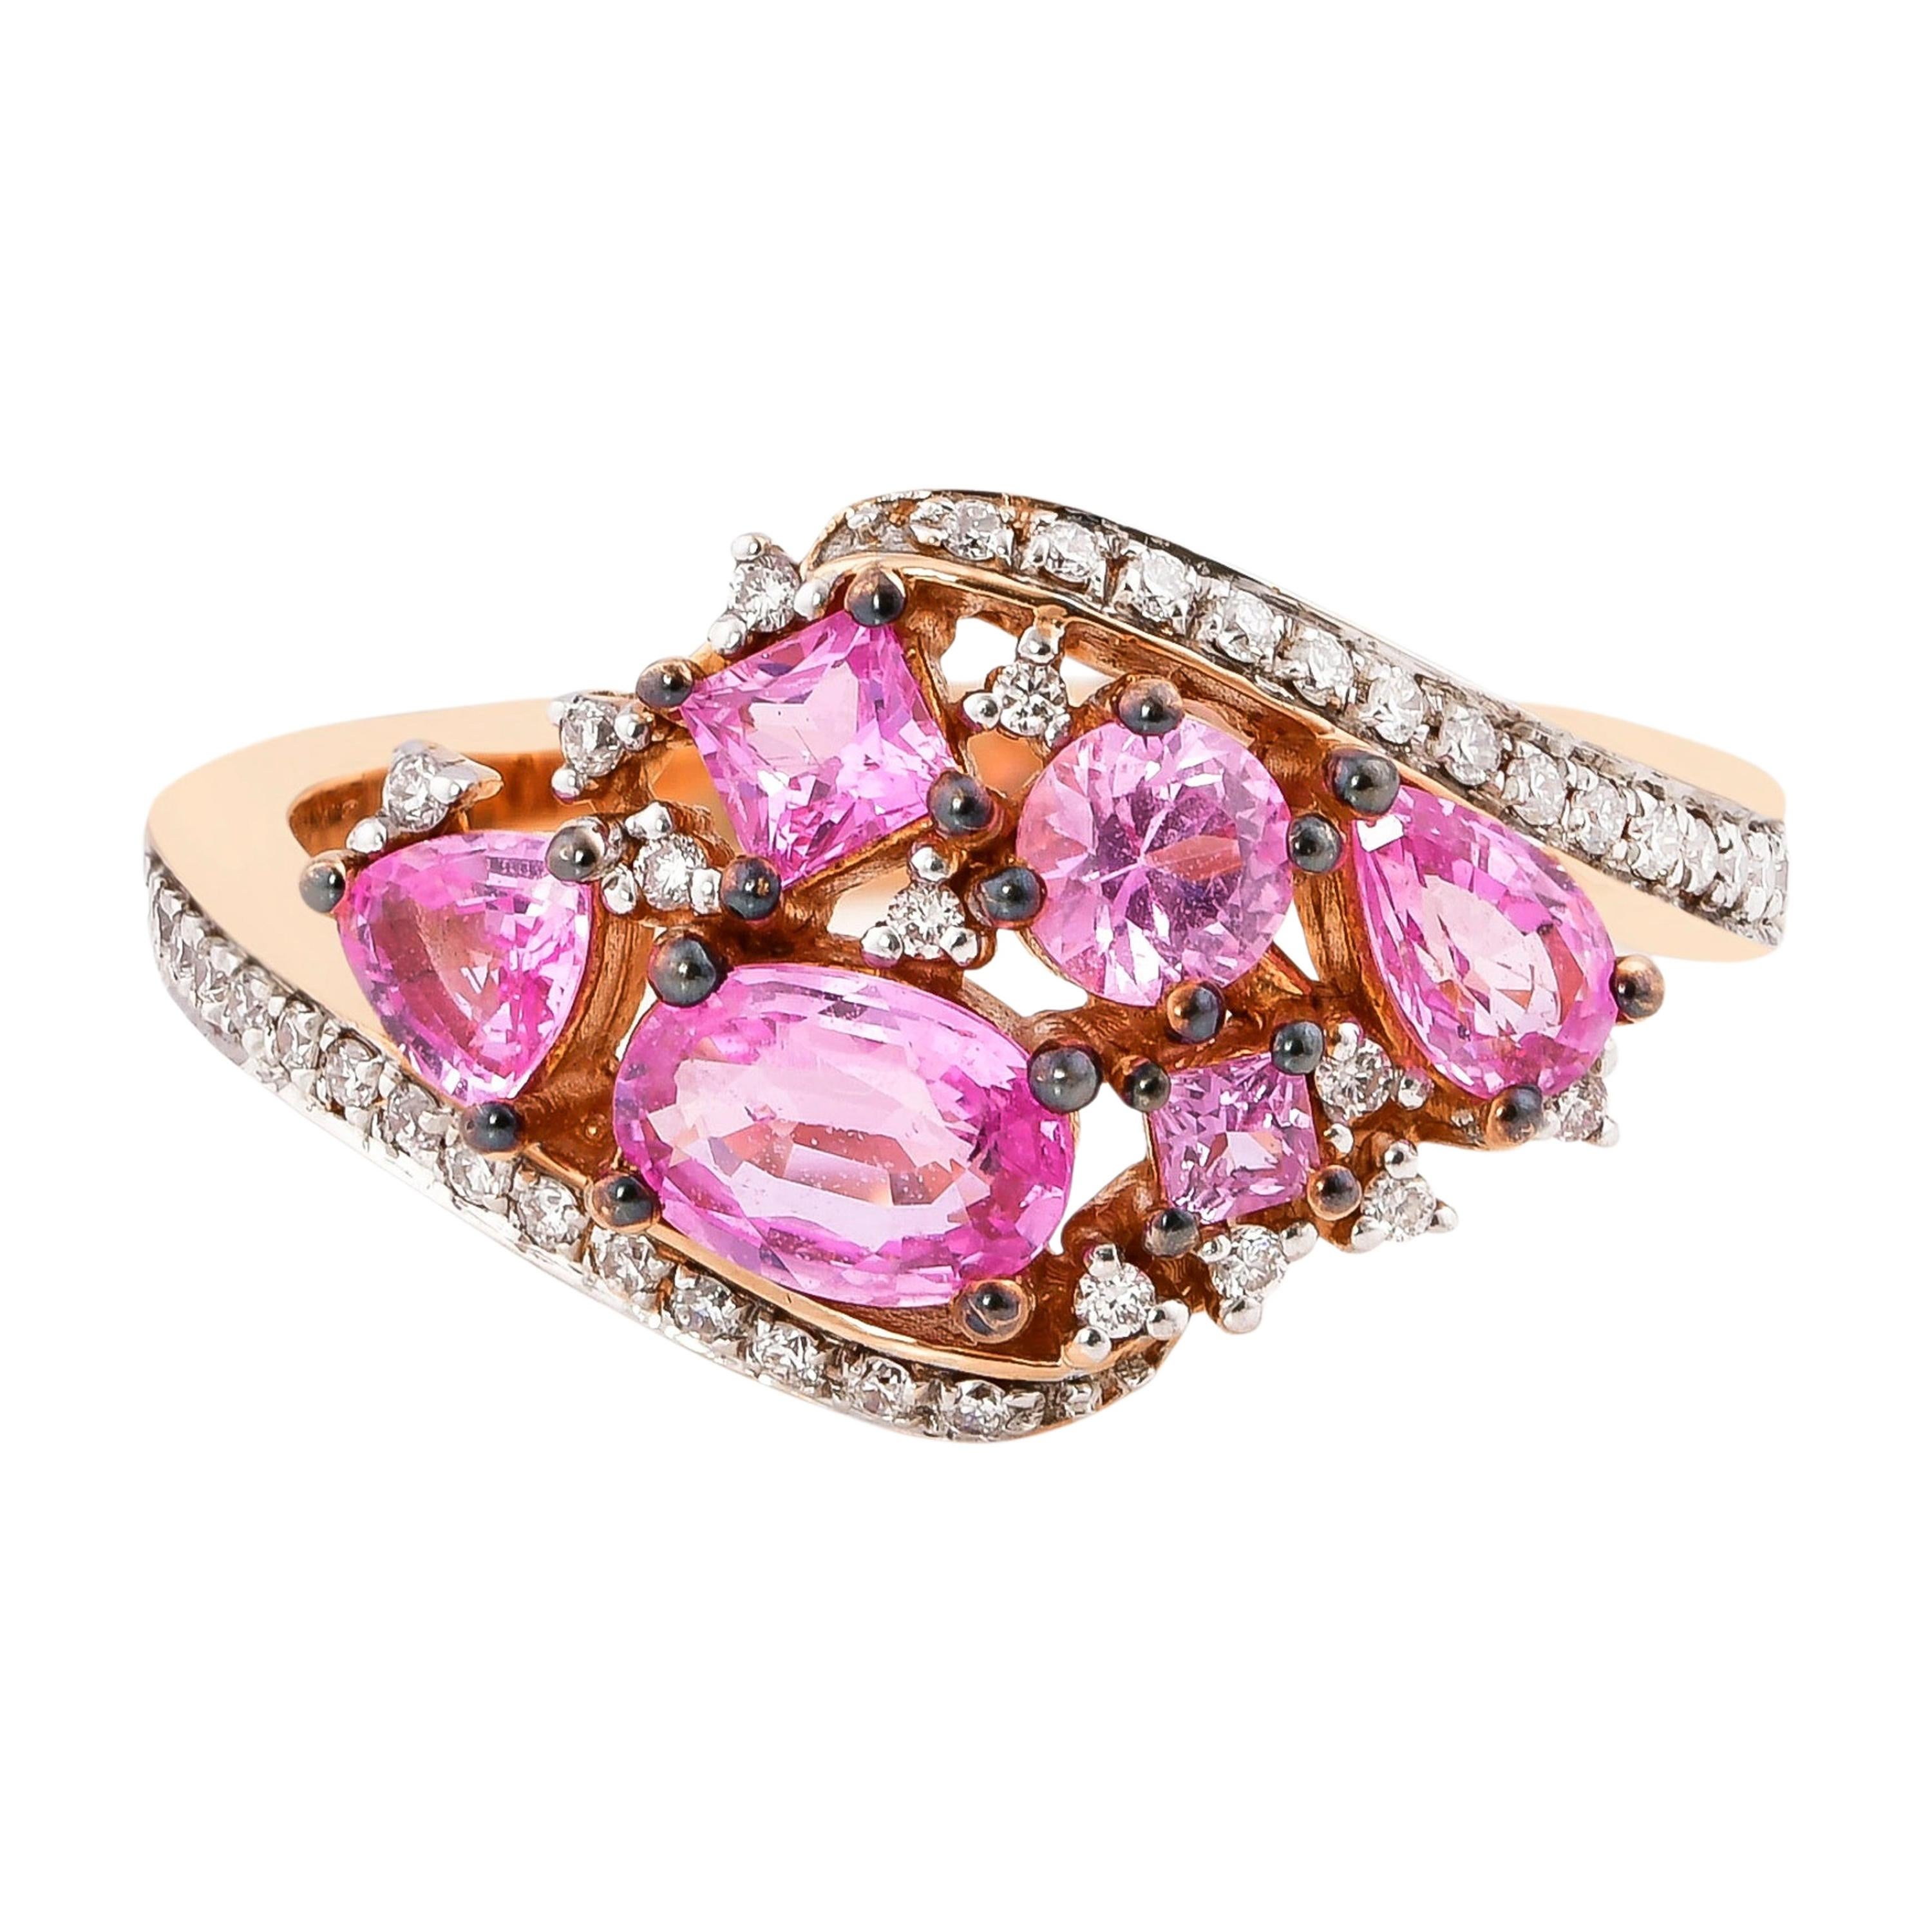 1.4 Carat Pink Sapphire Ring with Diamond in 18 Karat Rose Gold